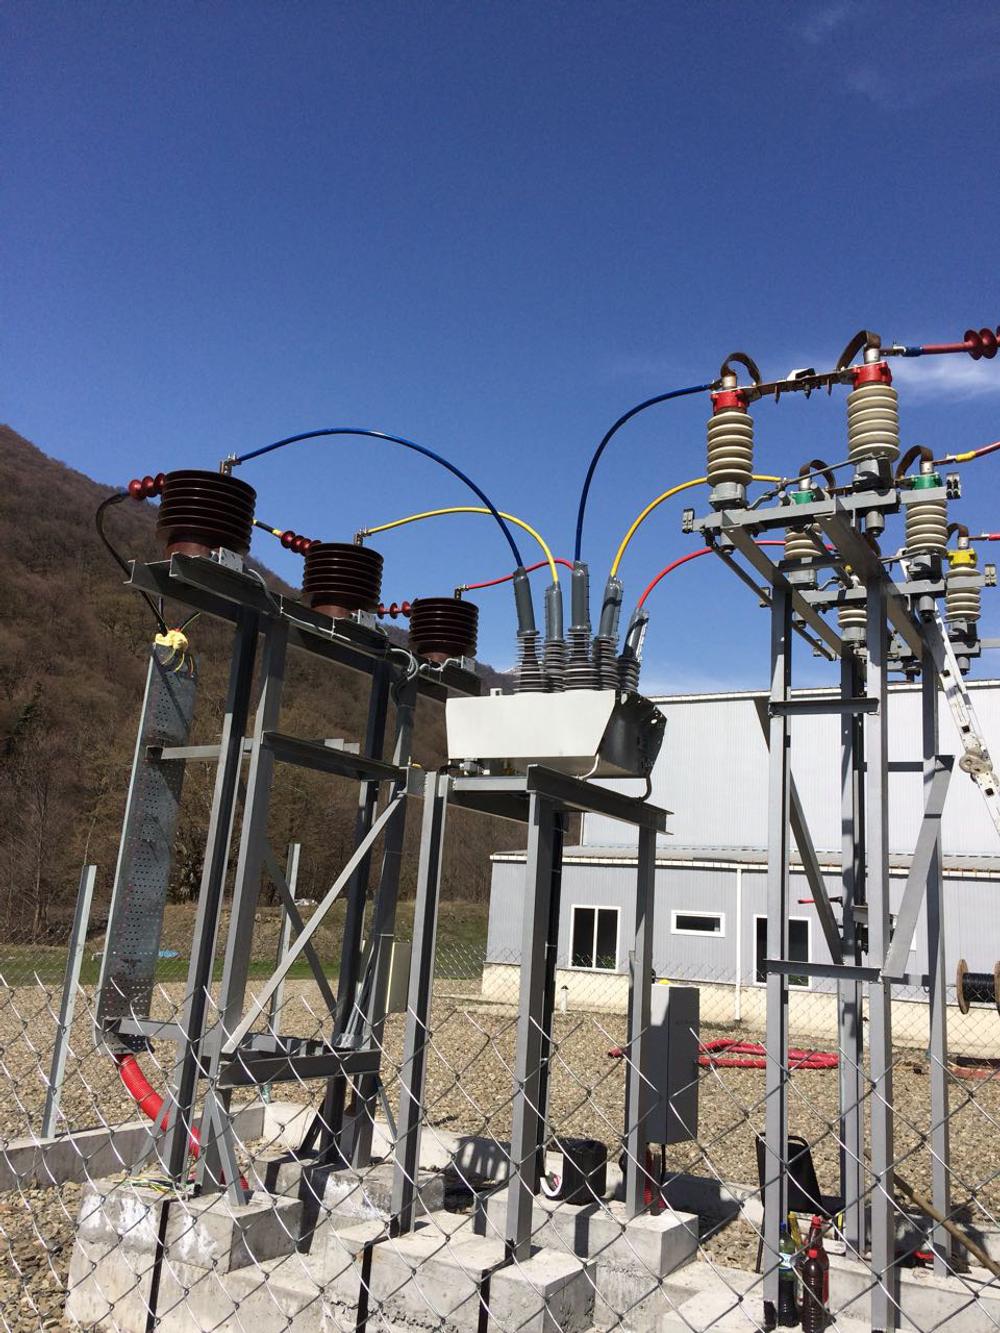 Religador OSM NOJA Power usado em uma subestação rural, na Geórgia.